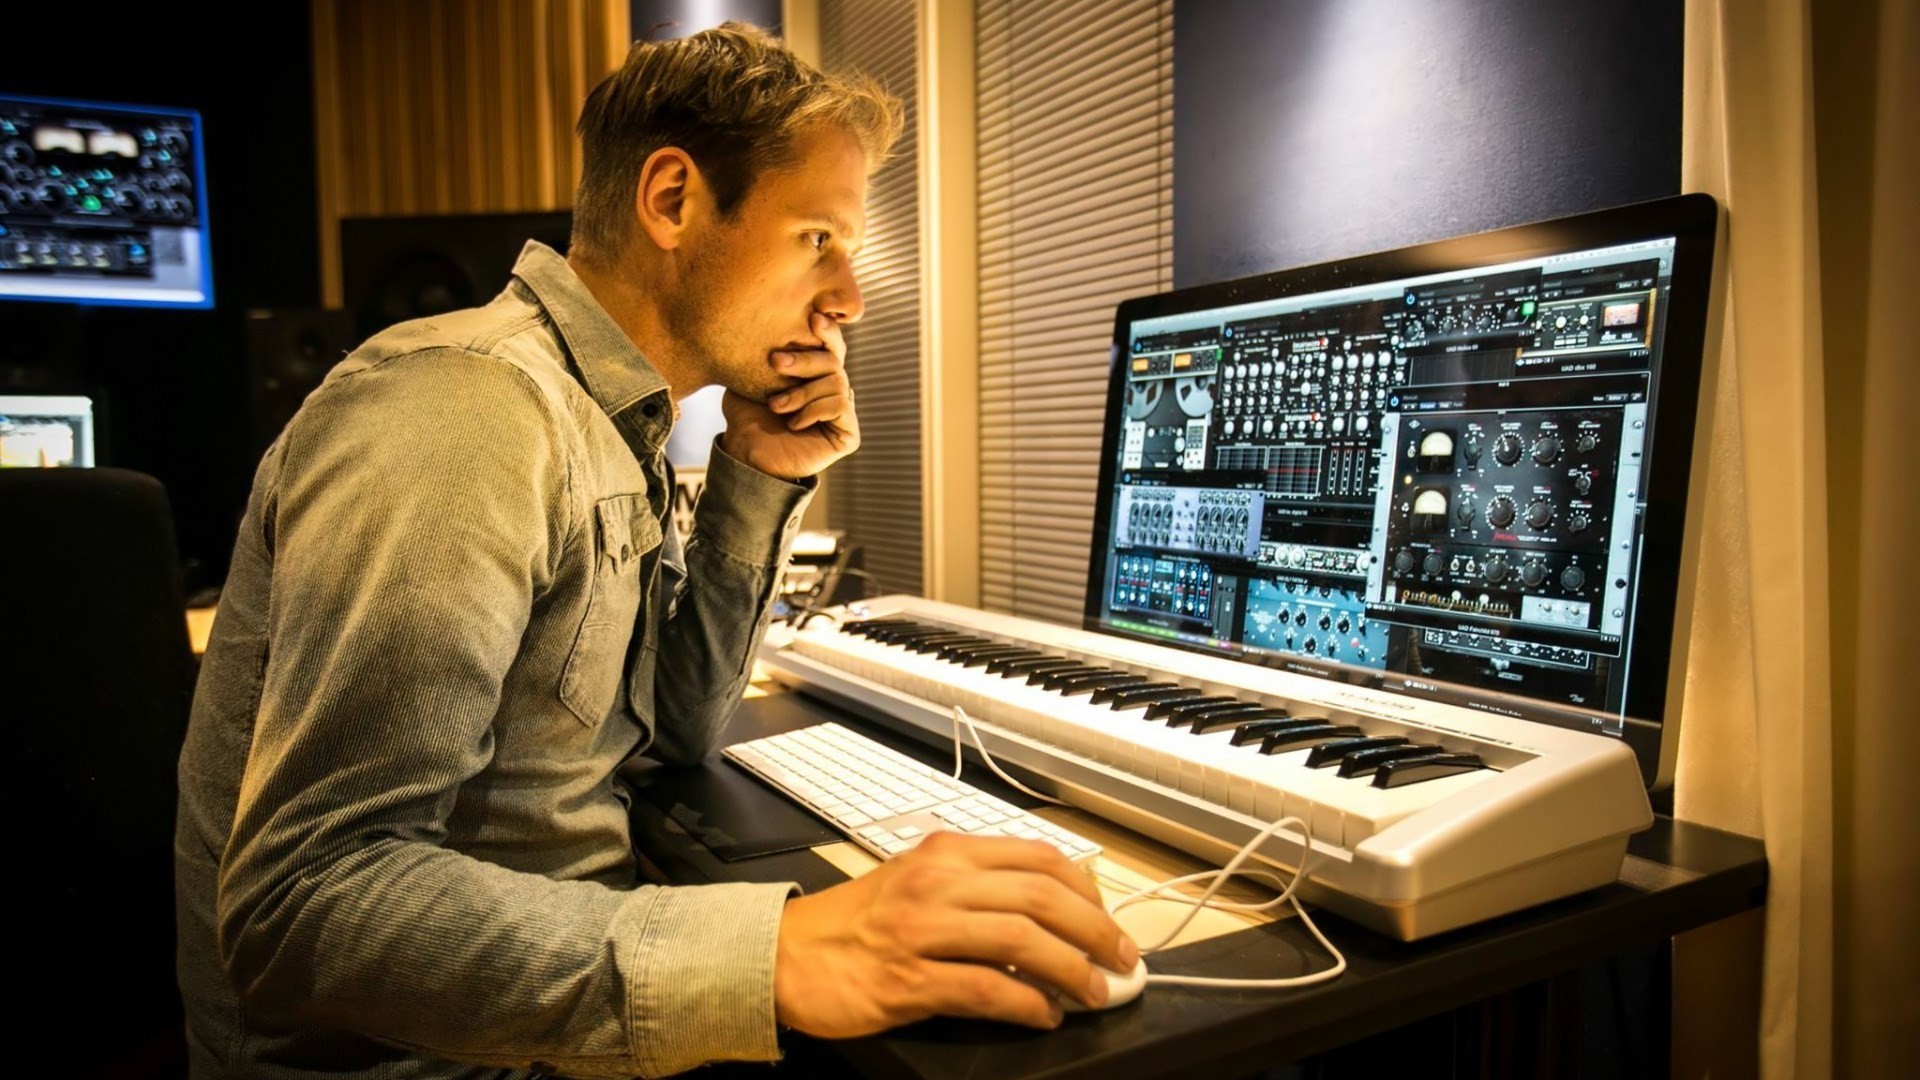 Музыка начинающих музыкантов. Студия Армина Ван Бюрена. Armin van Buuren в студии. Армин музыкант. Студия композитора.